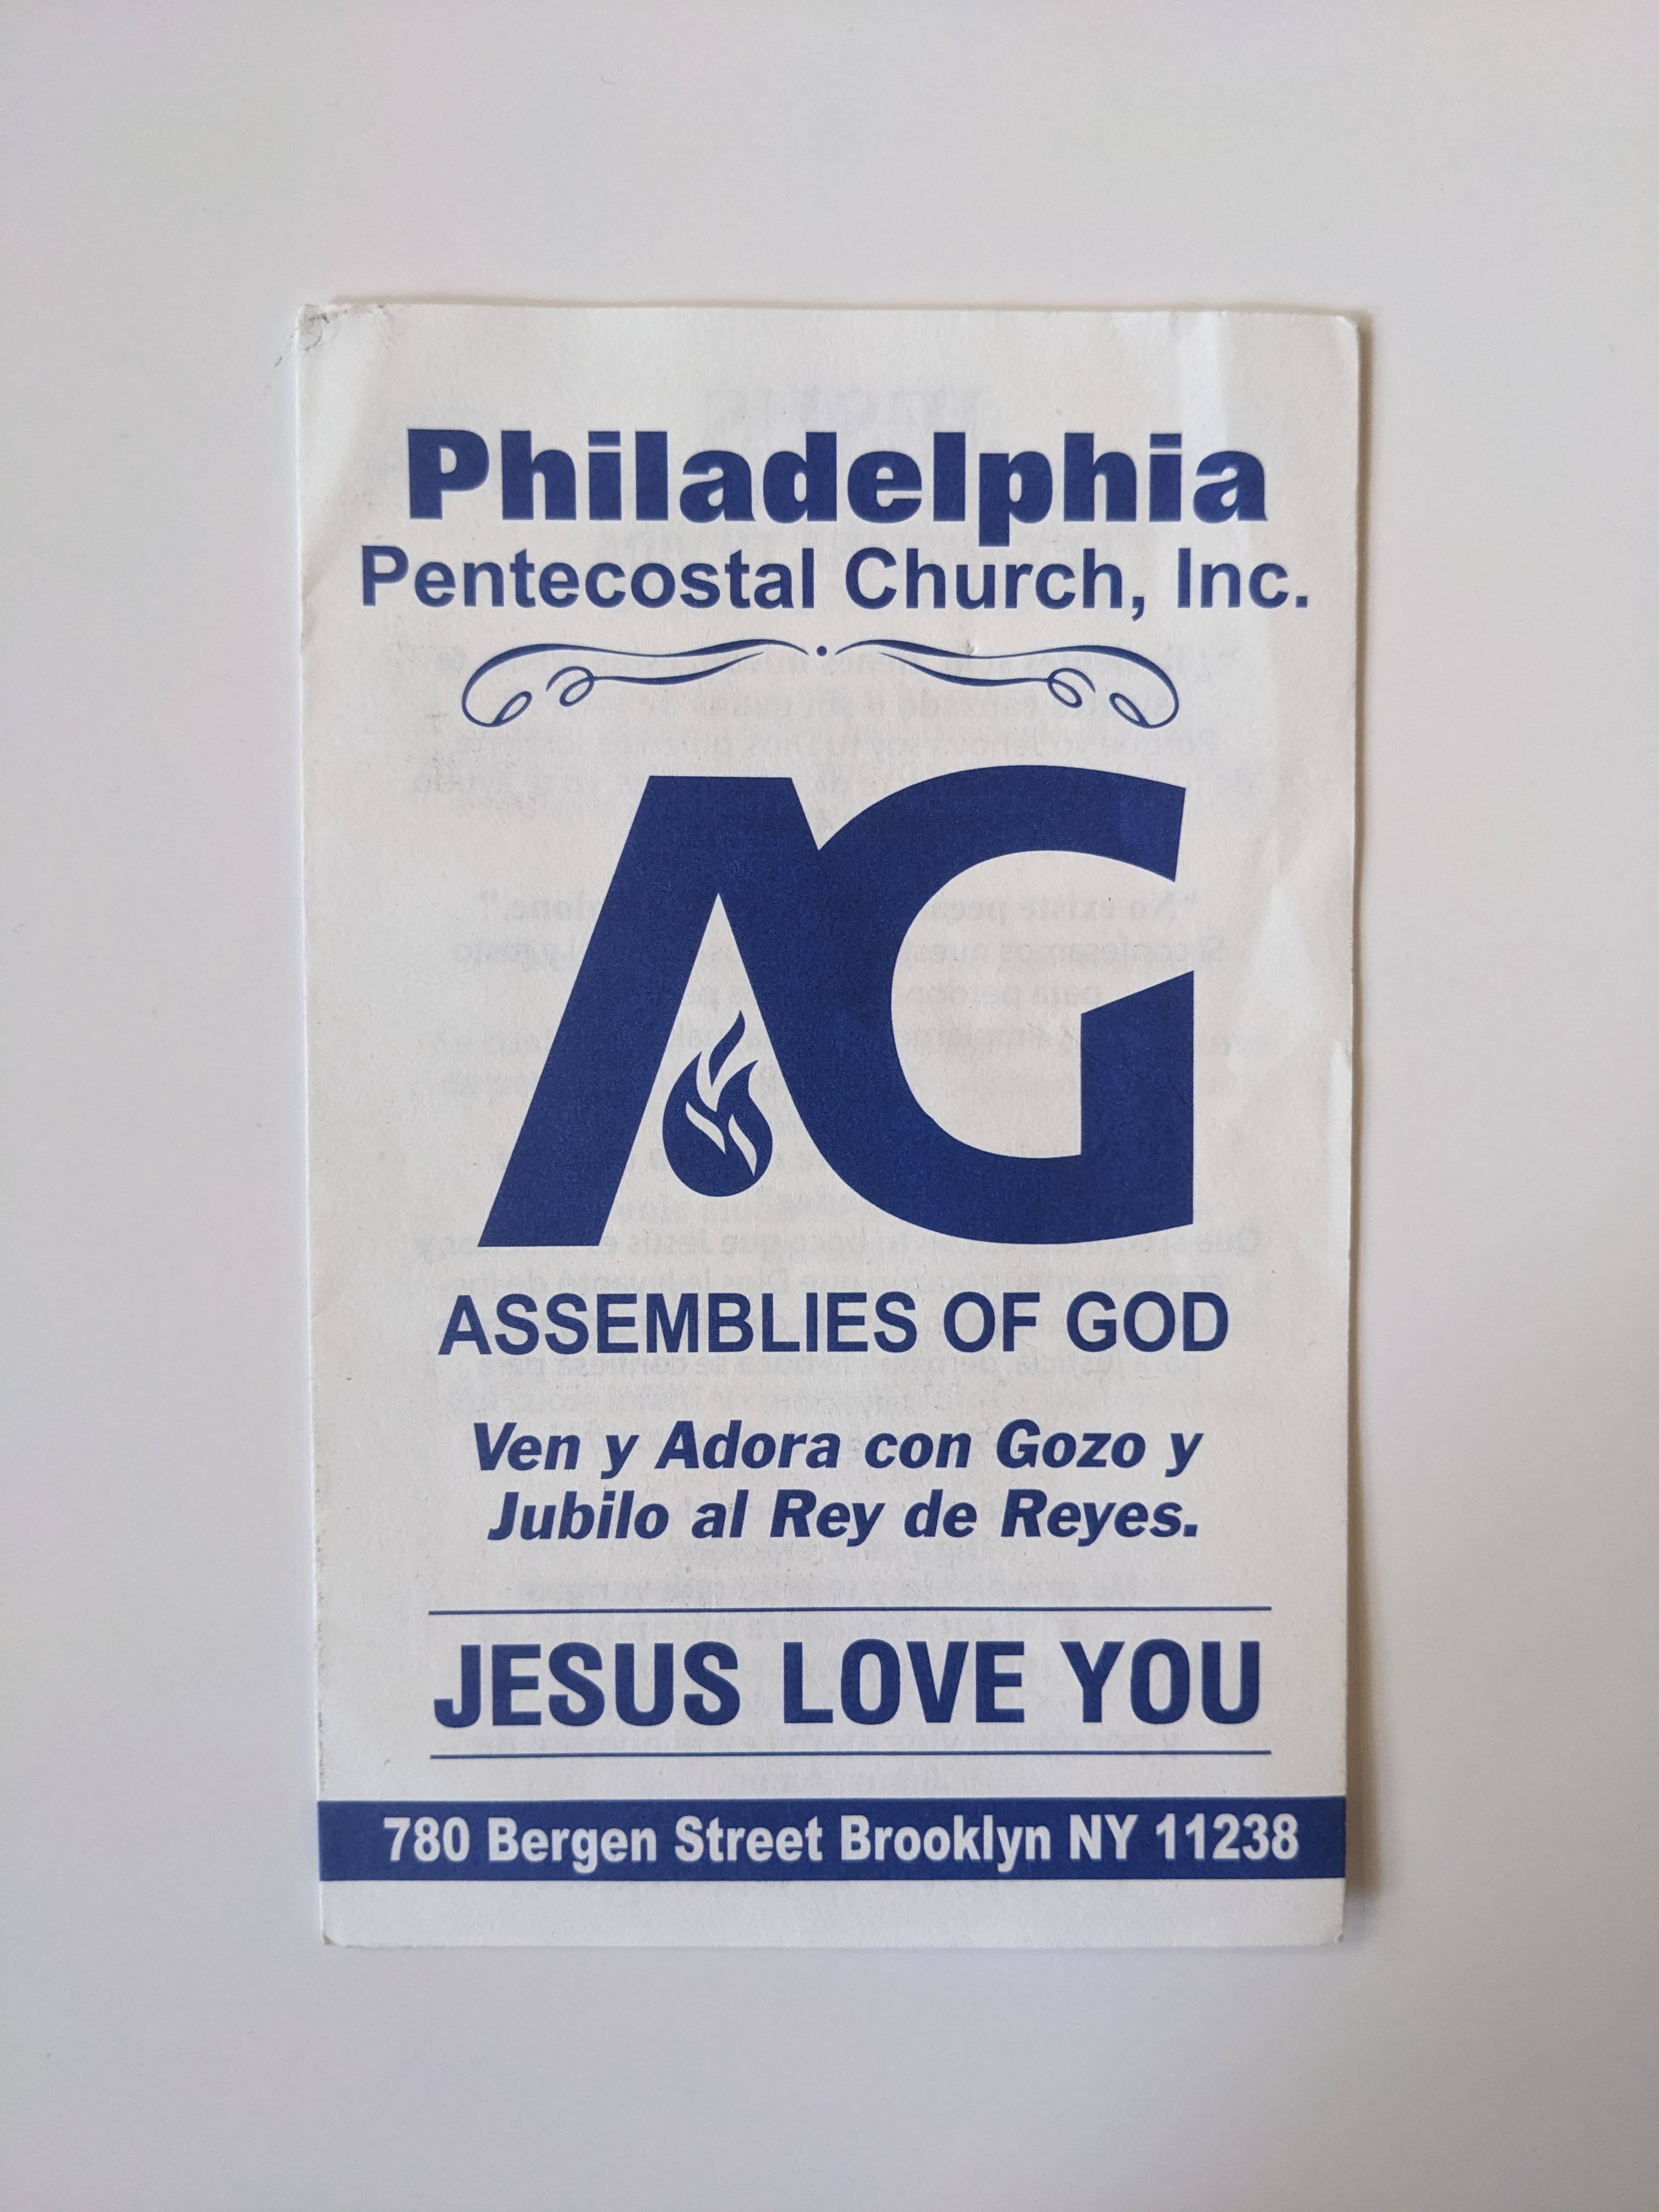 Assemblies of God